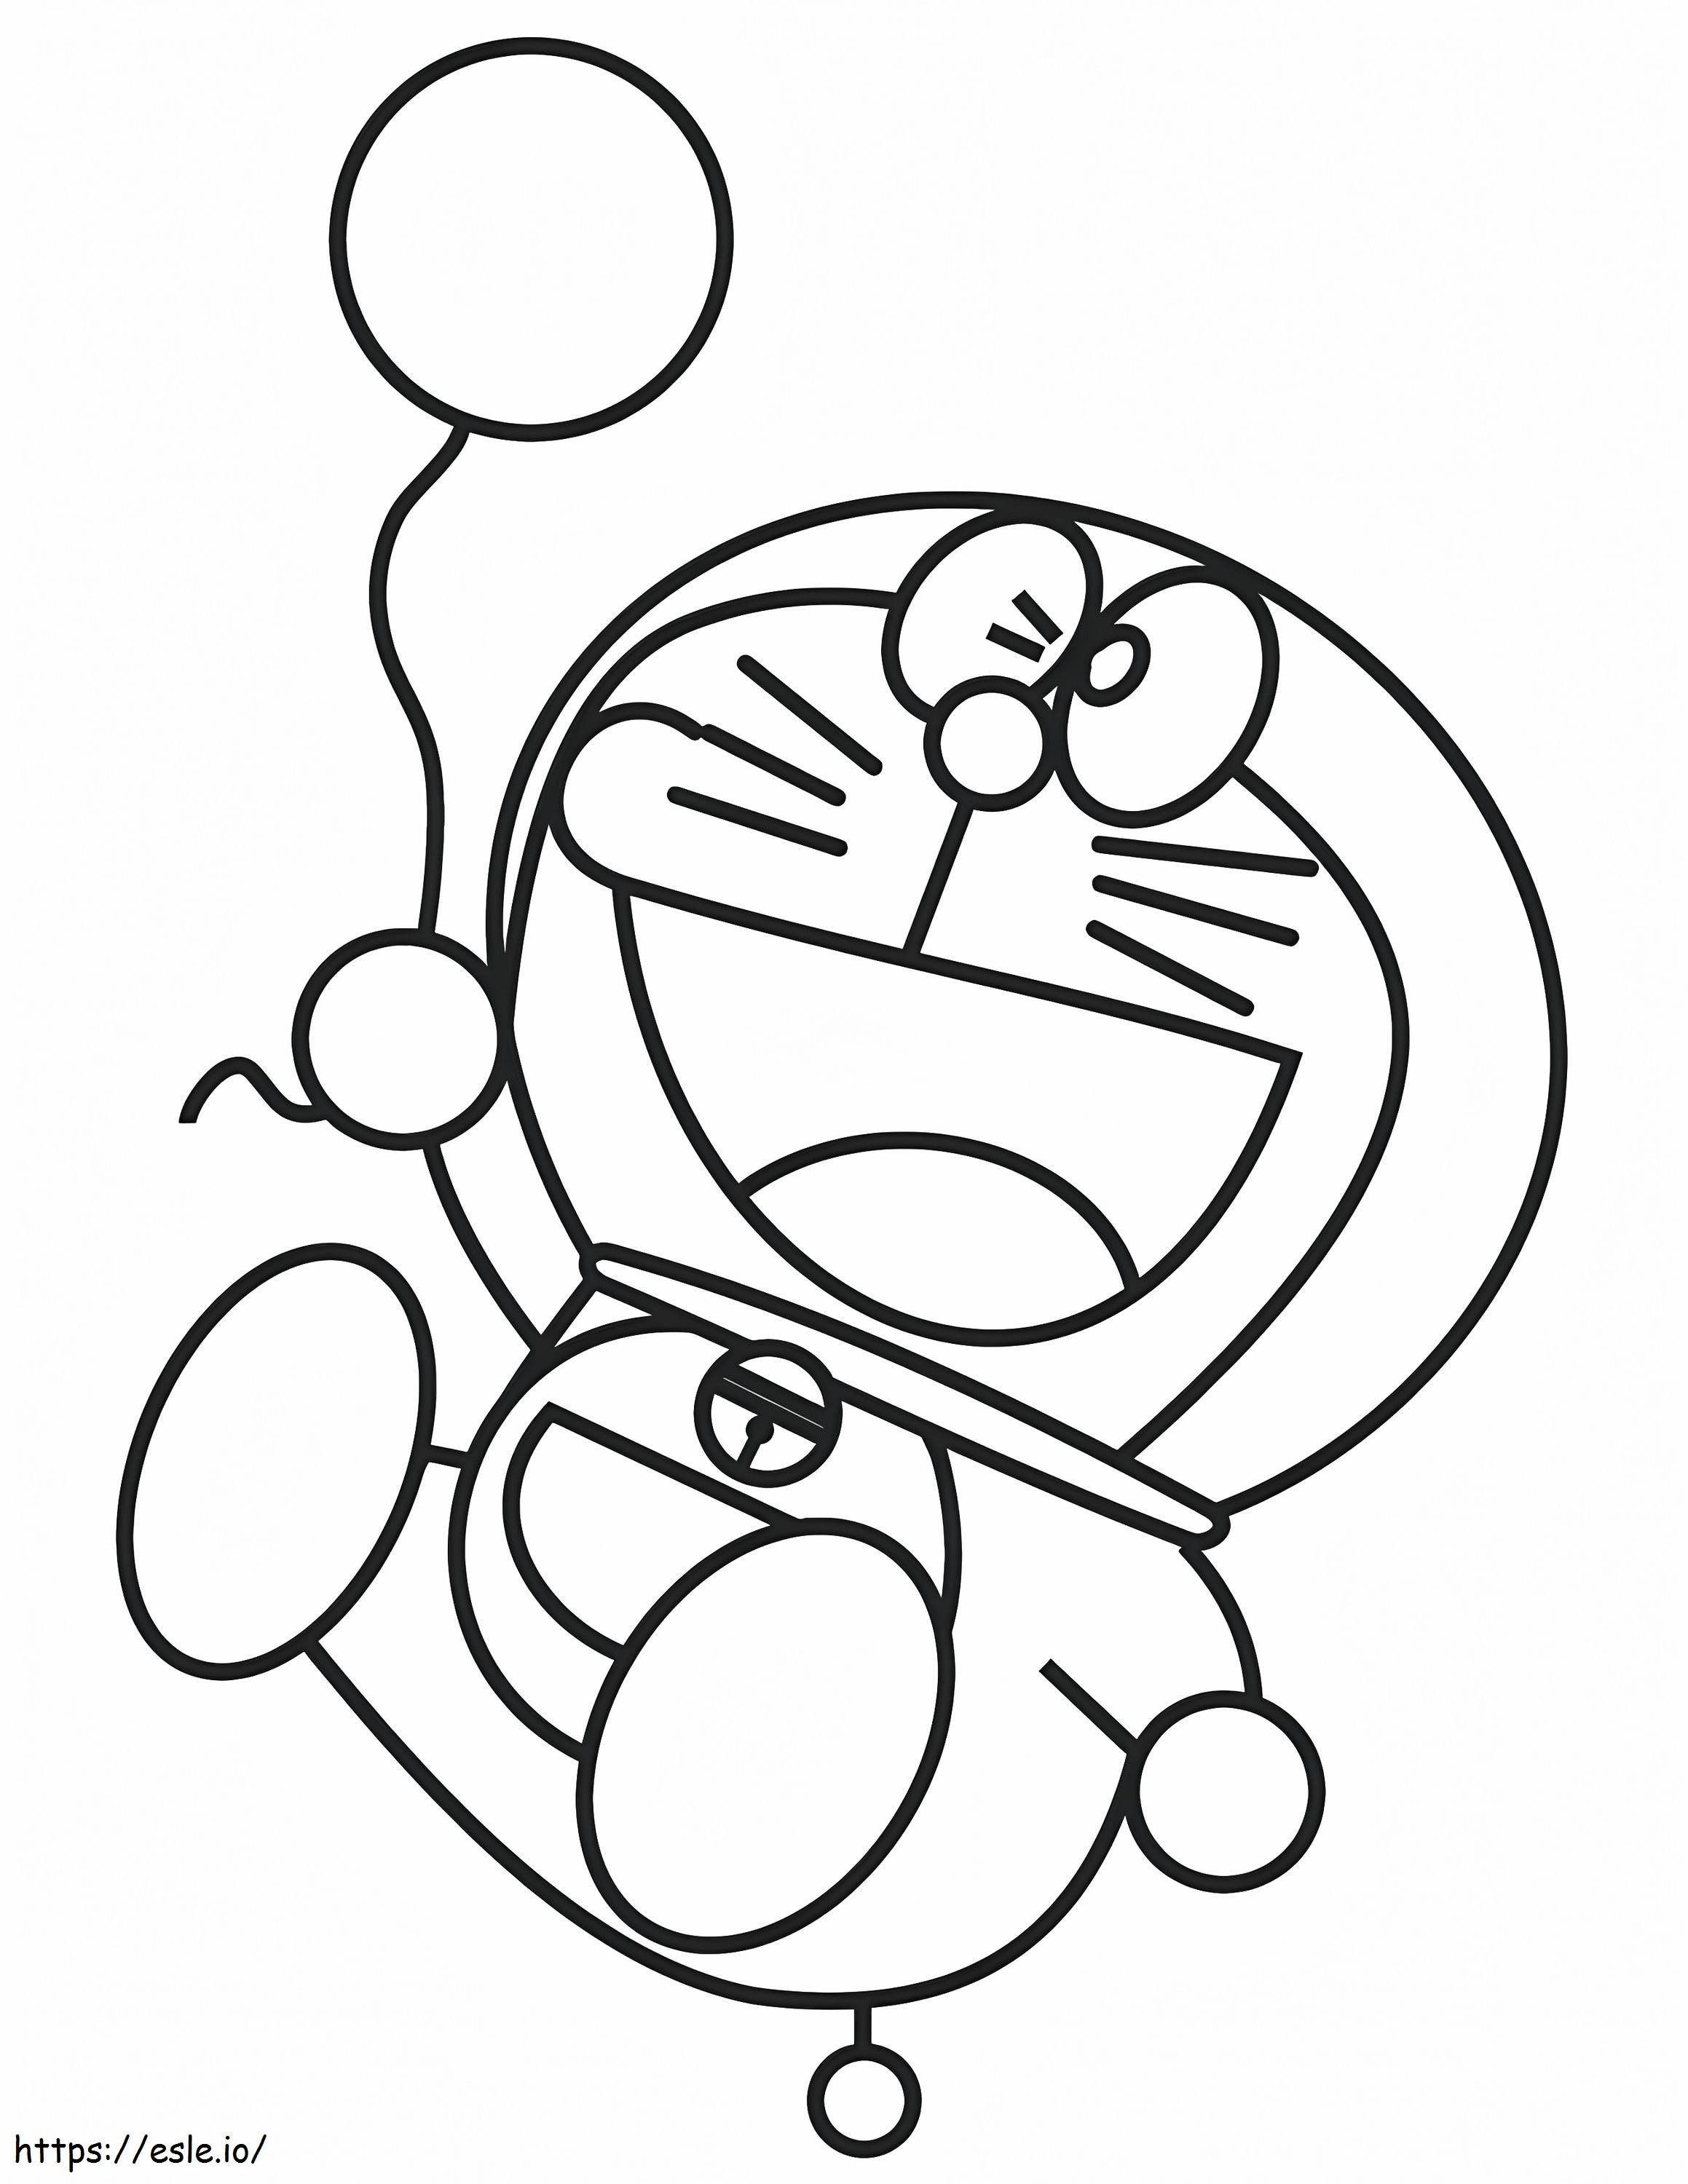 1531277988 Doraemon com balão A4 para colorir